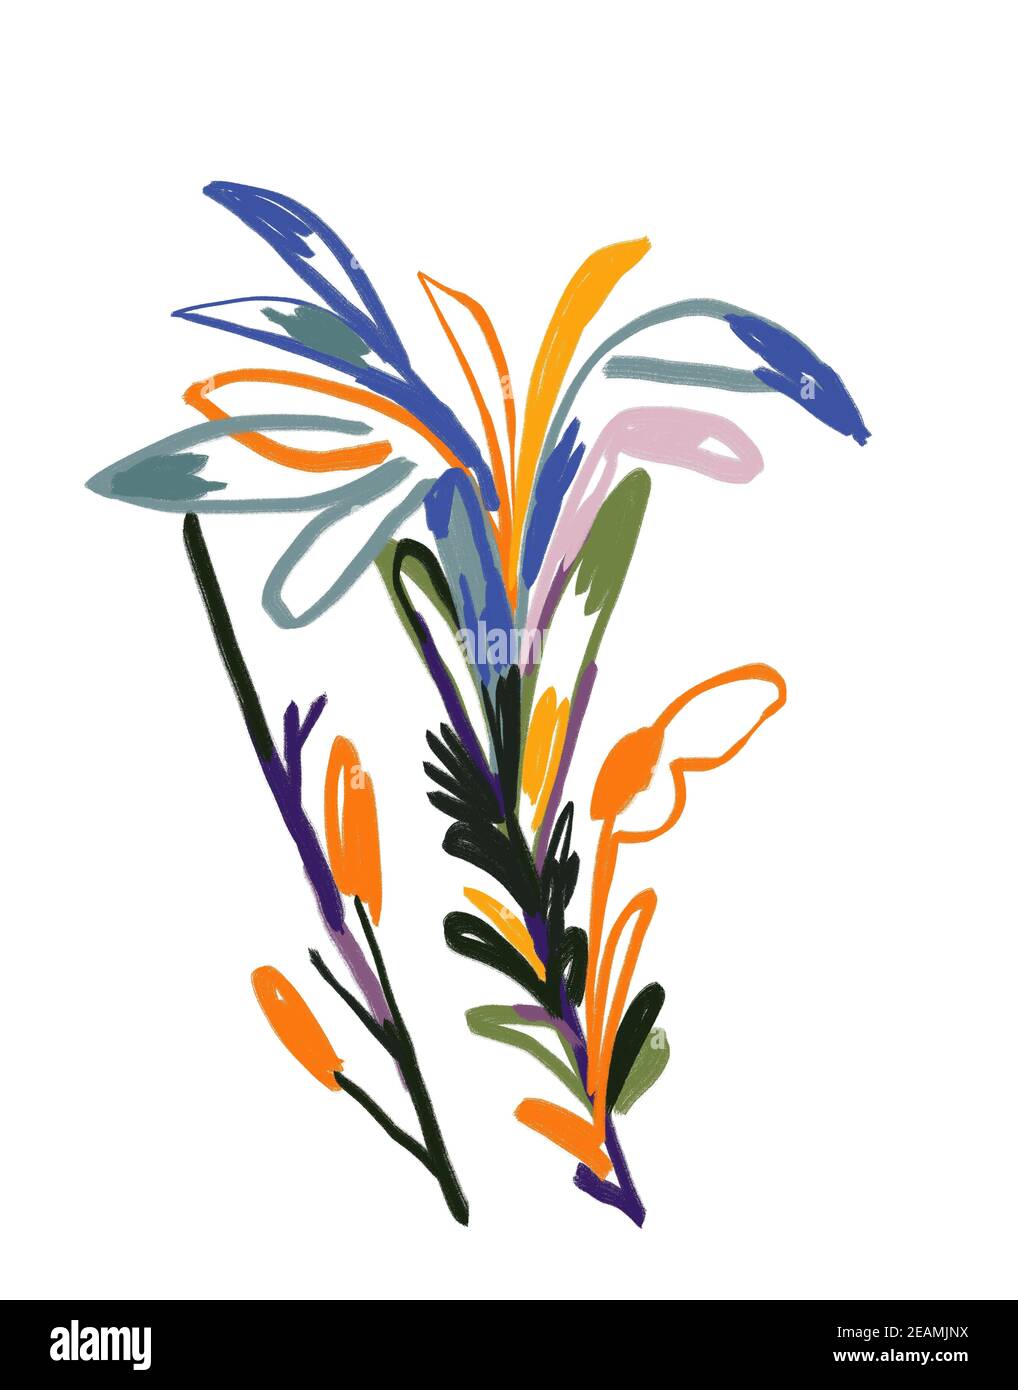 Pittura astratta di fiori in stile Raoul dufy e Fauvism. Arte moderna e alla moda per stampa e poster. Immagine isolata in bianco. Foto Stock